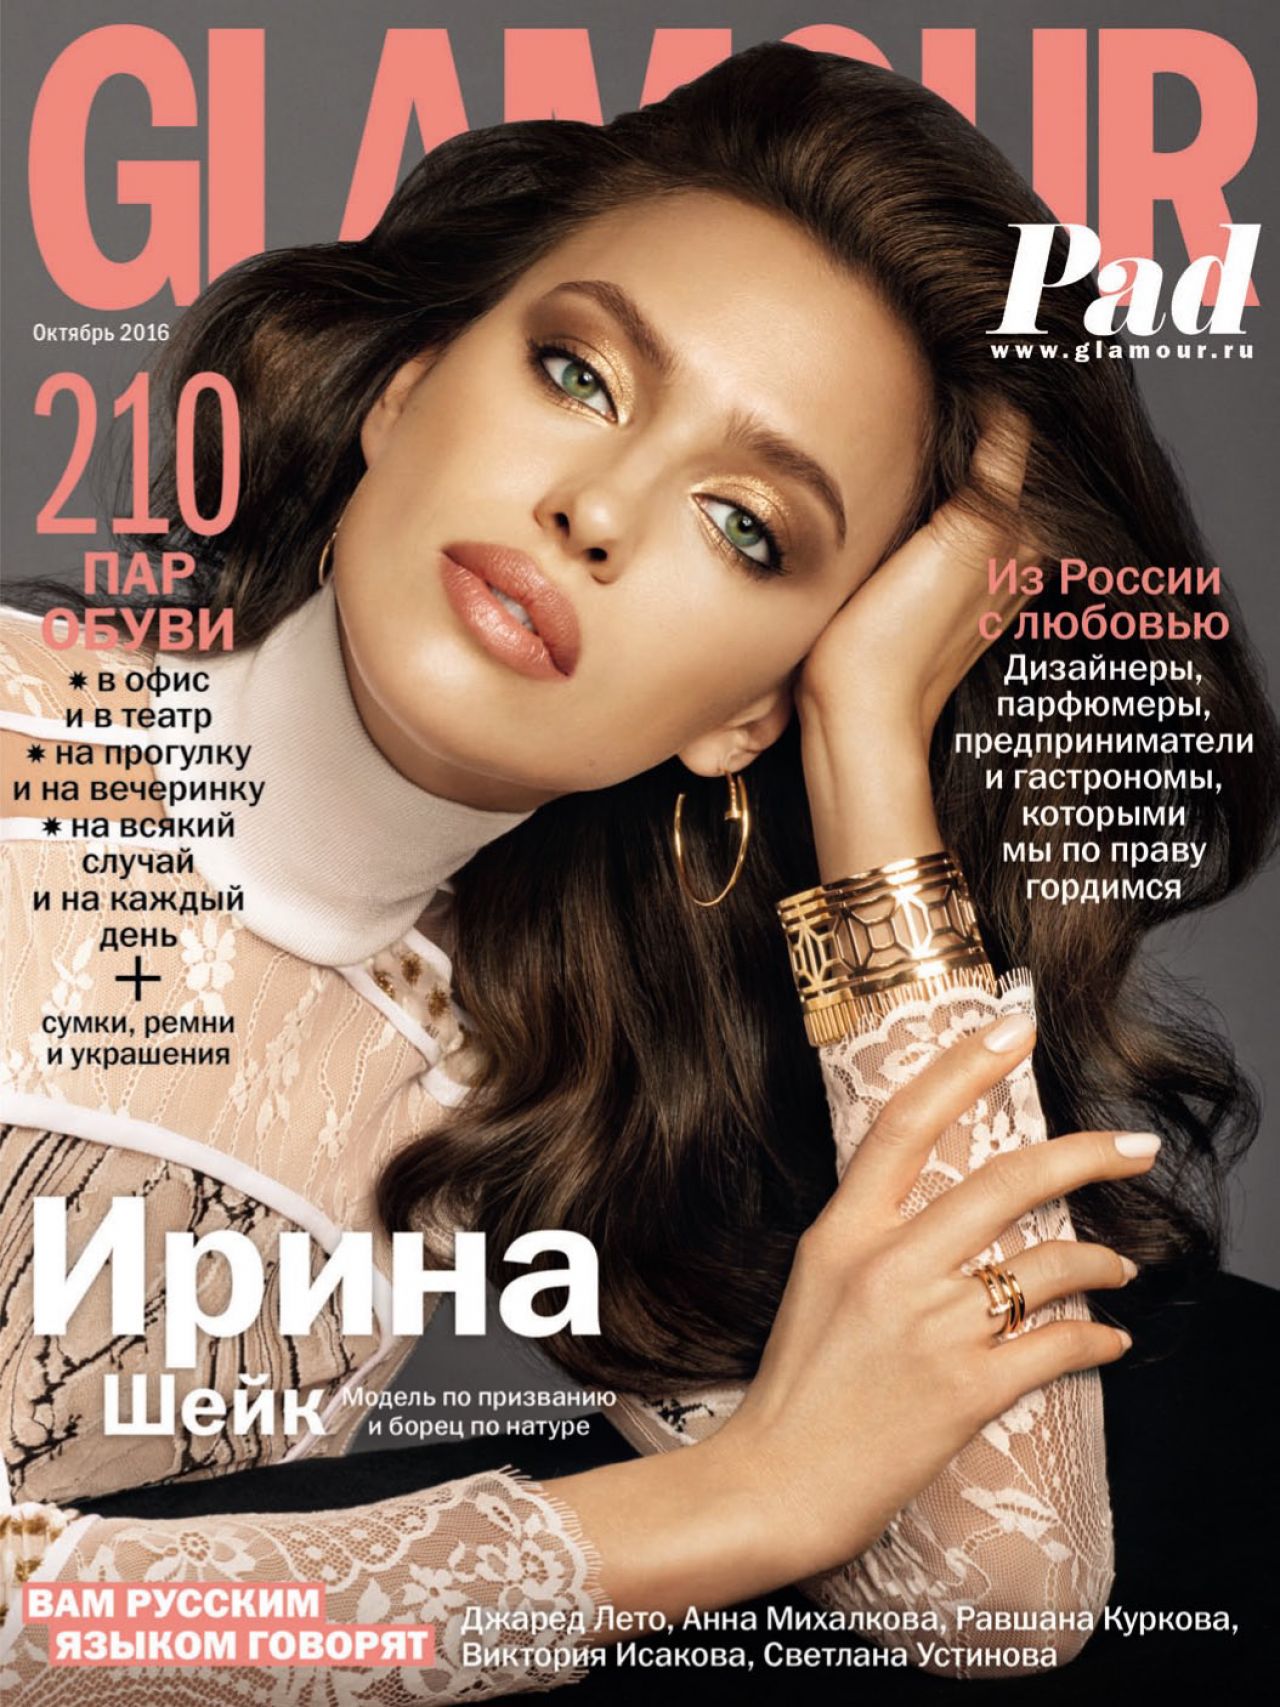 Irina Shayk - Glamour MAgazine Russia October 2016 Cover ...
